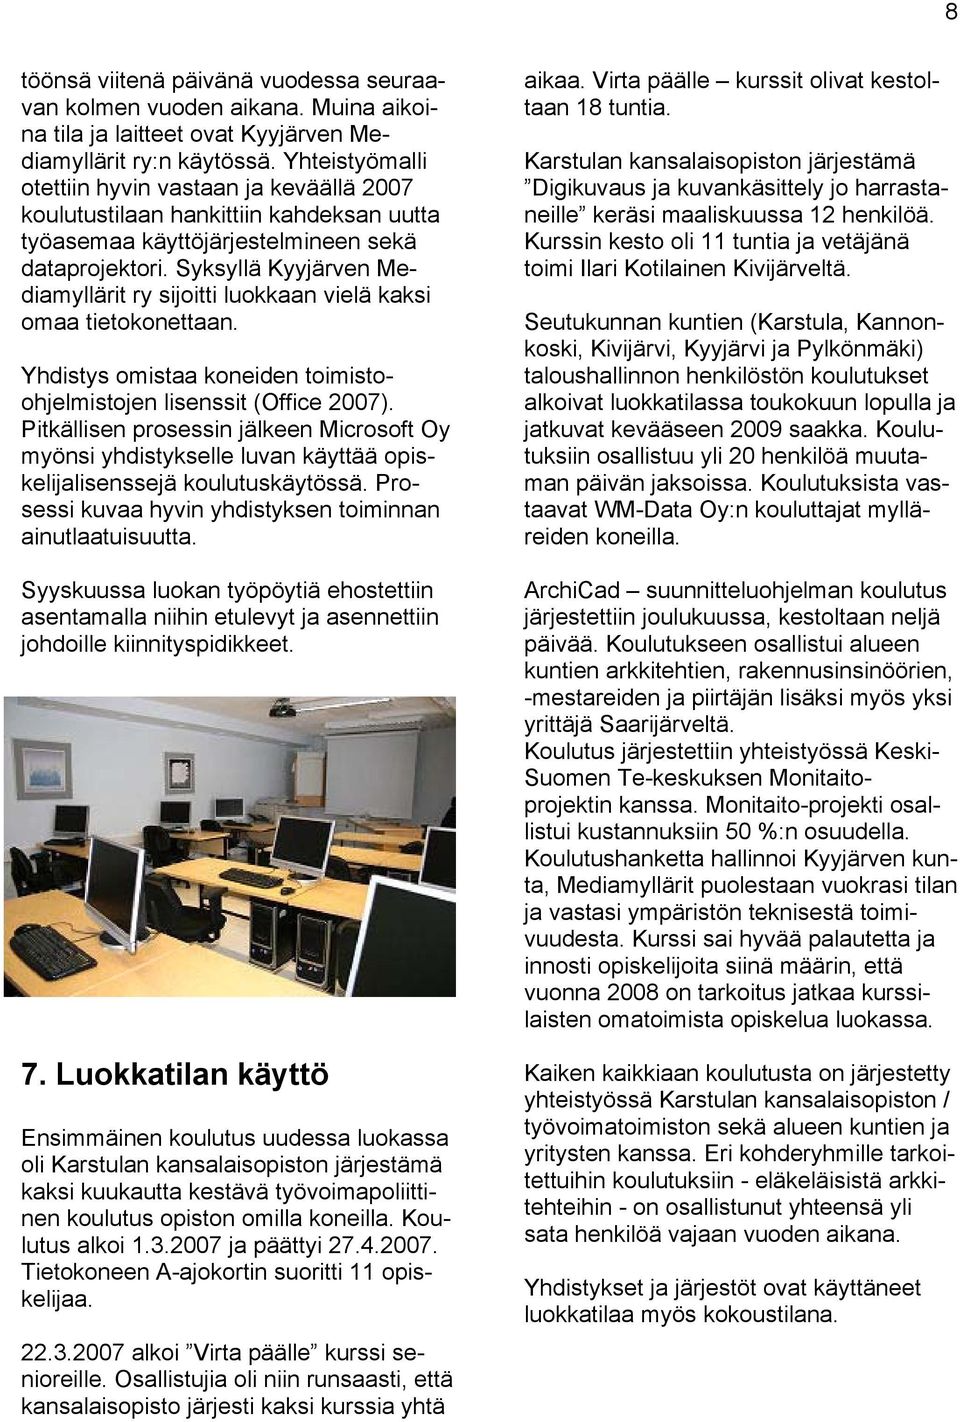 Syksyllä Kyyjärven Mediamyllärit ry sijoitti luokkaan vielä kaksi omaa tietokonettaan. Yhdistys omistaa koneiden toimistoohjelmistojen lisenssit (Office 2007).